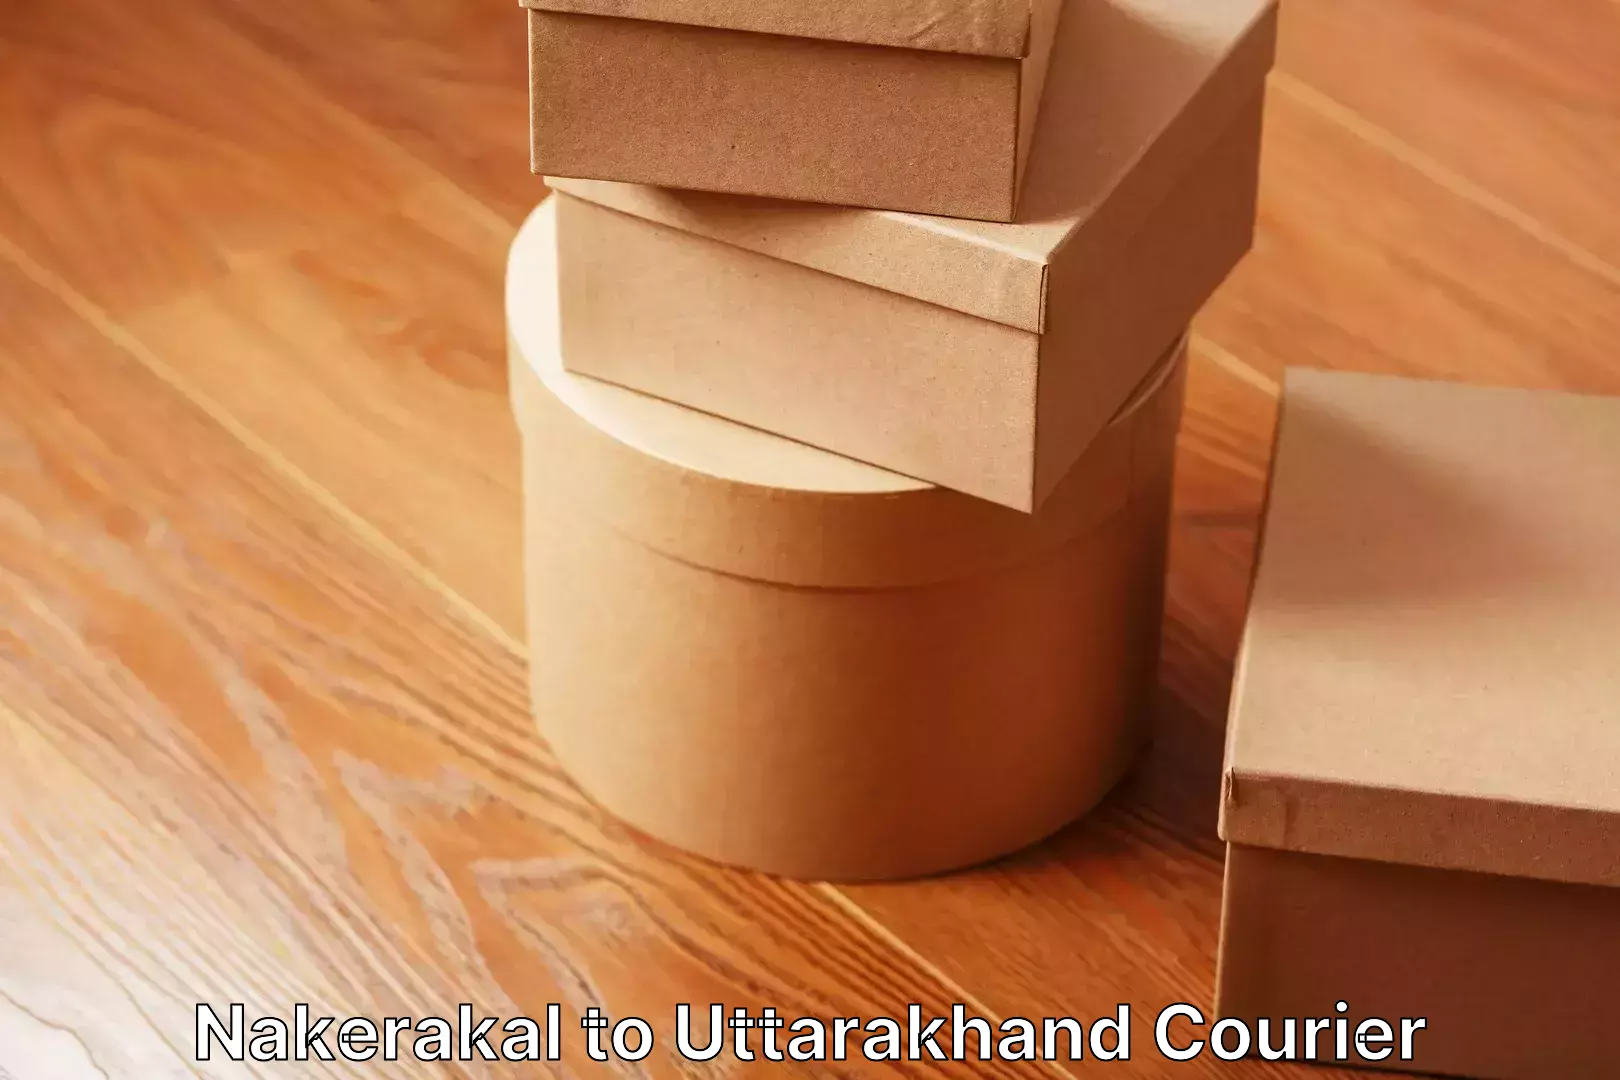 Skilled furniture movers Nakerakal to Uttarakhand